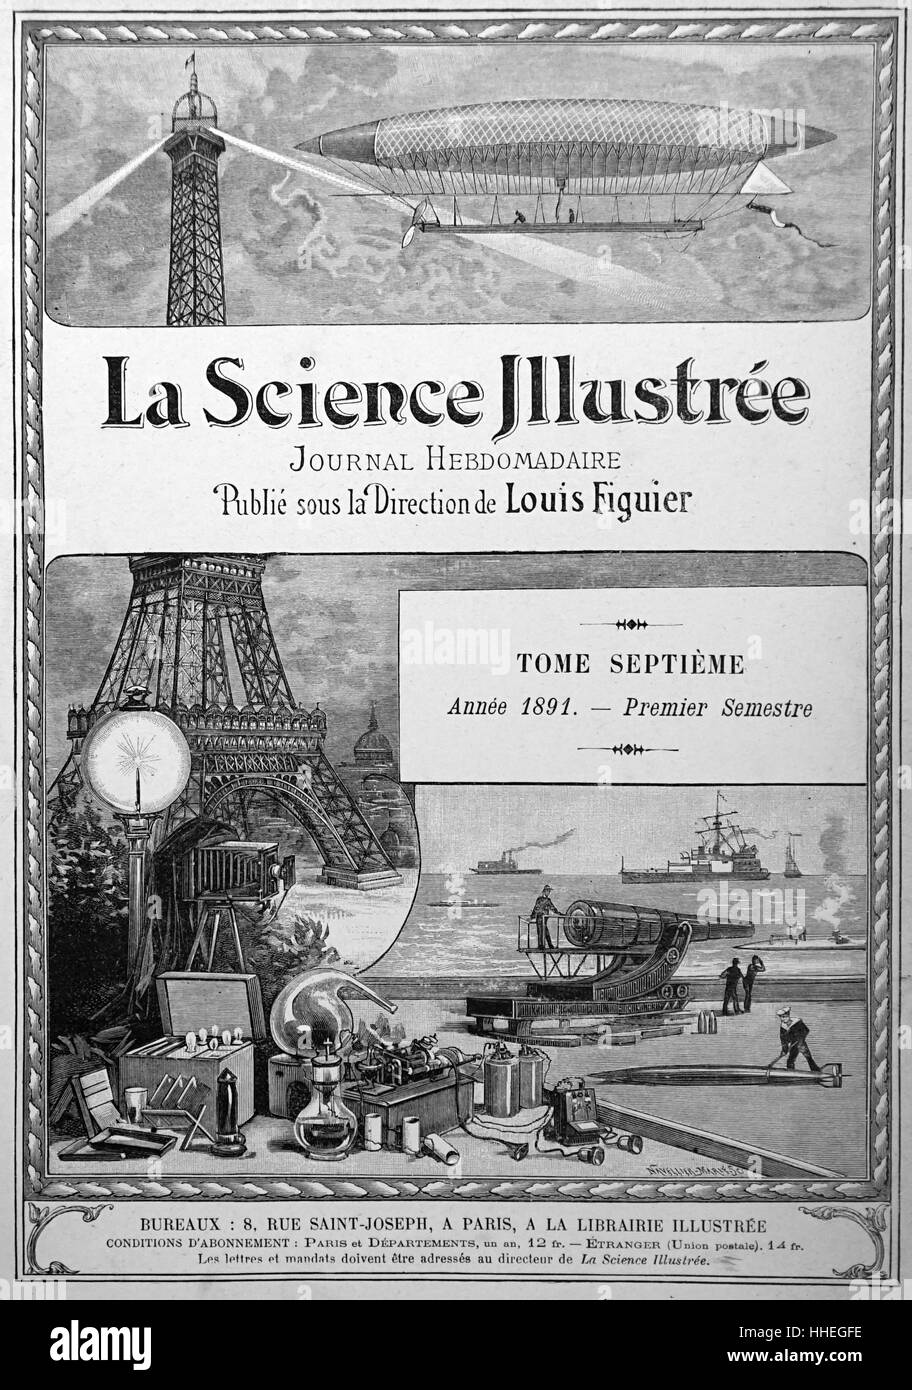 Pagina del titolo di "La Science Illustree' un popolare francese rivista scientifica. Datata del XIX secolo Foto Stock